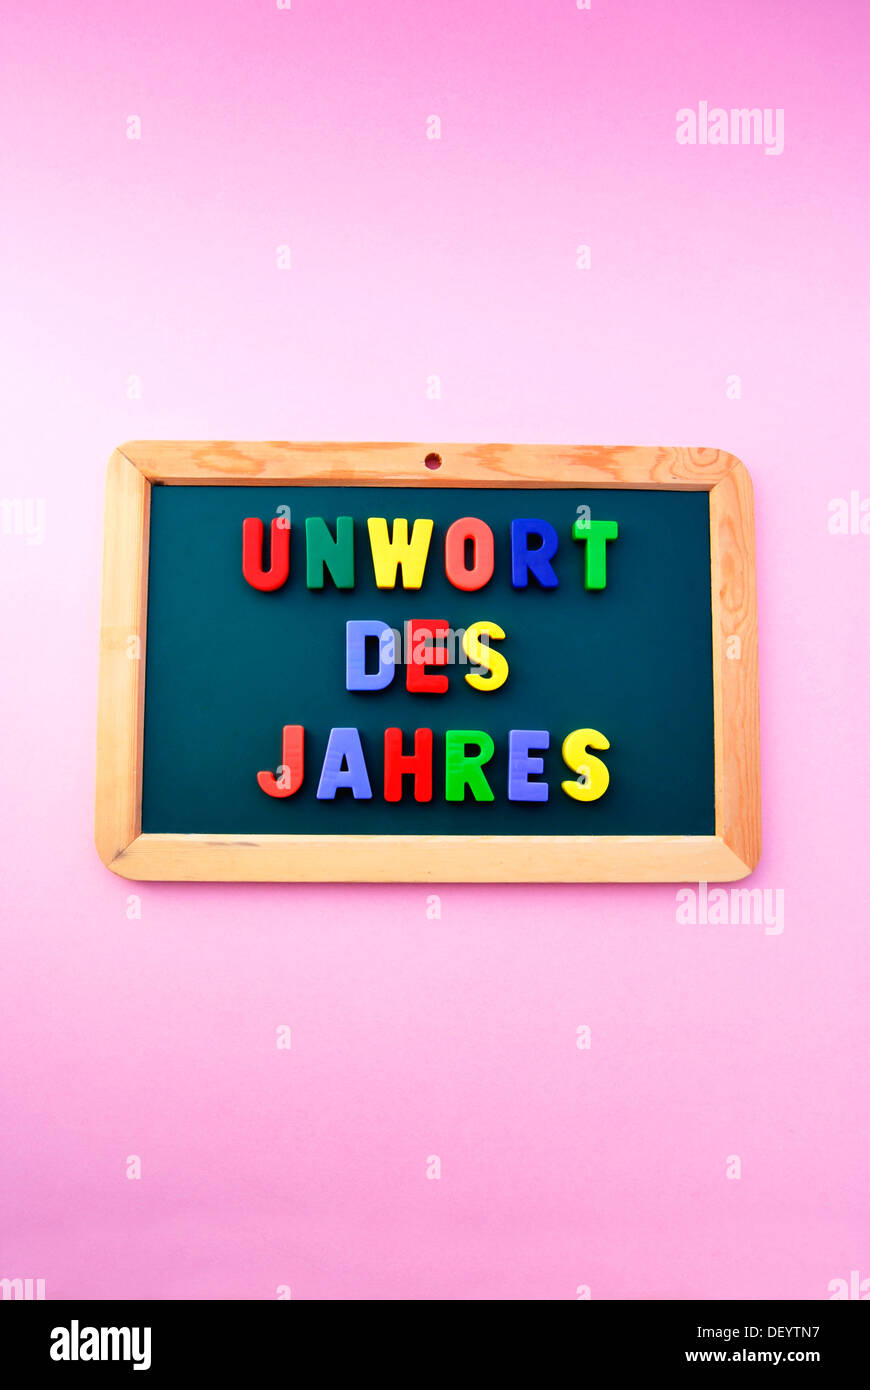 Unwort des Jahres, Allemand pour Pire Mot de l'année, écrit en lettres magnétiques colorés sur une commission scolaire Banque D'Images